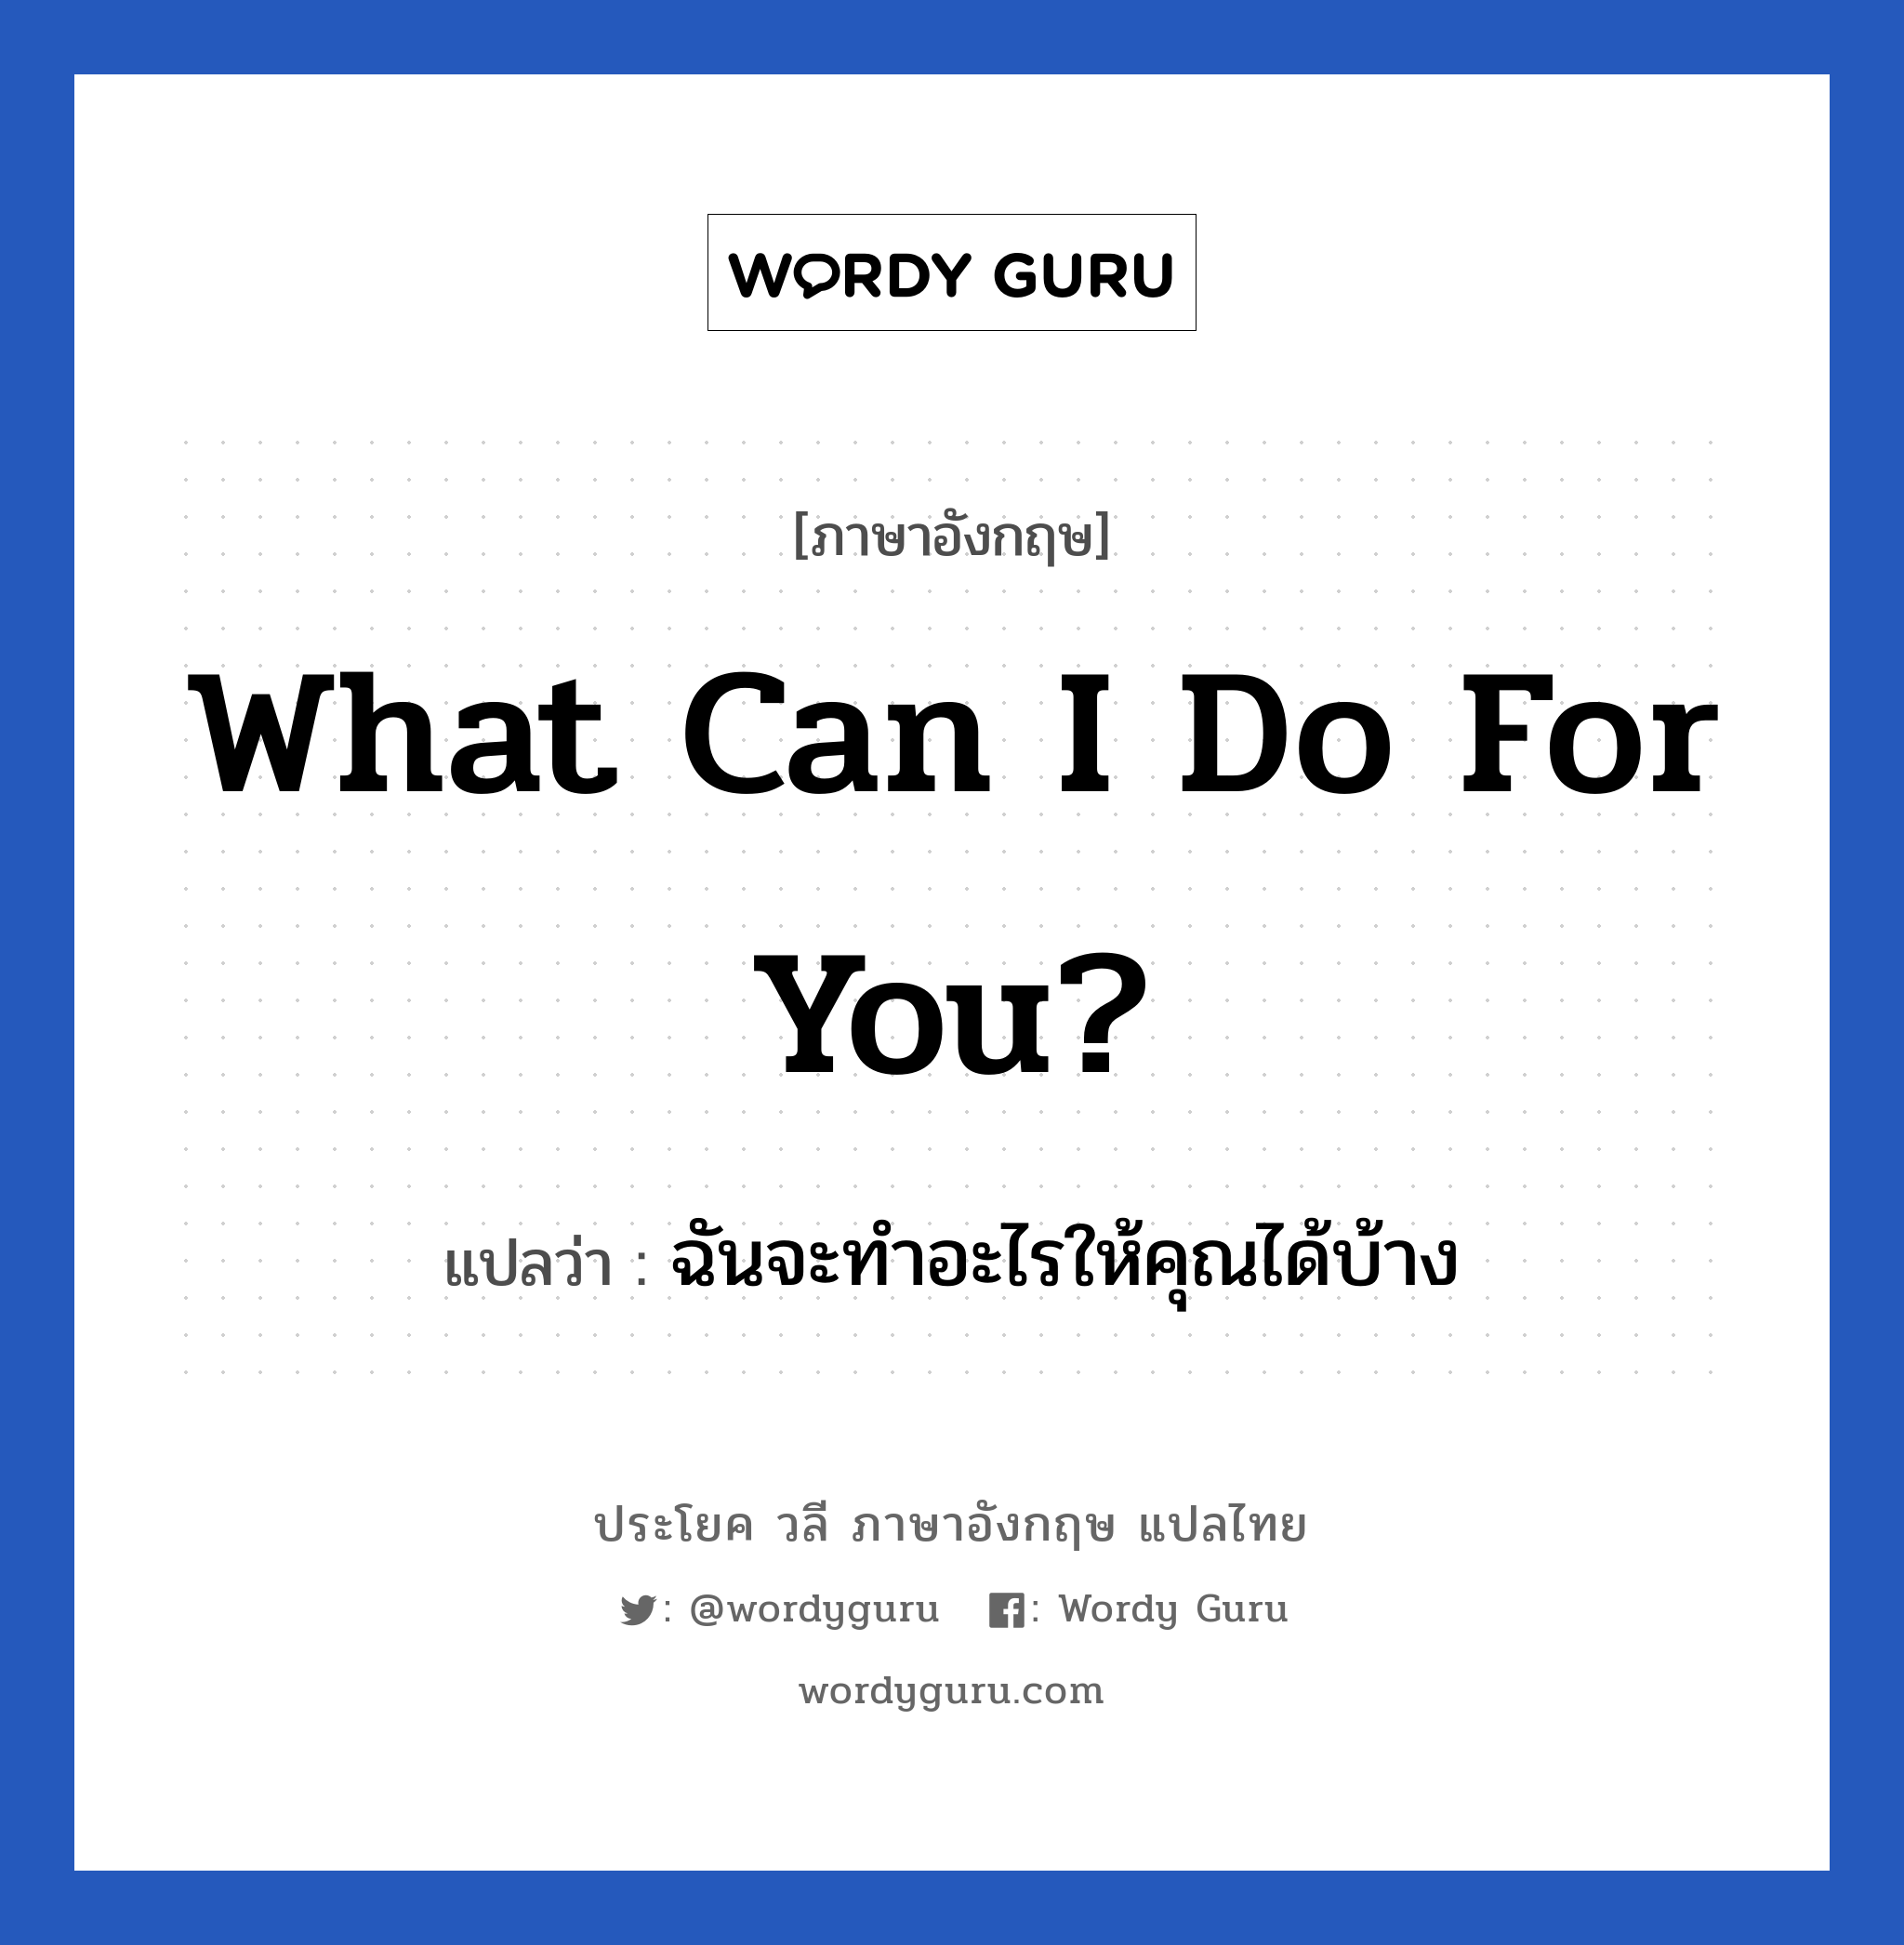 What can I do for you? แปลว่า?, วลีภาษาอังกฤษ What can I do for you? แปลว่า ฉันจะทำอะไรให้คุณได้บ้าง